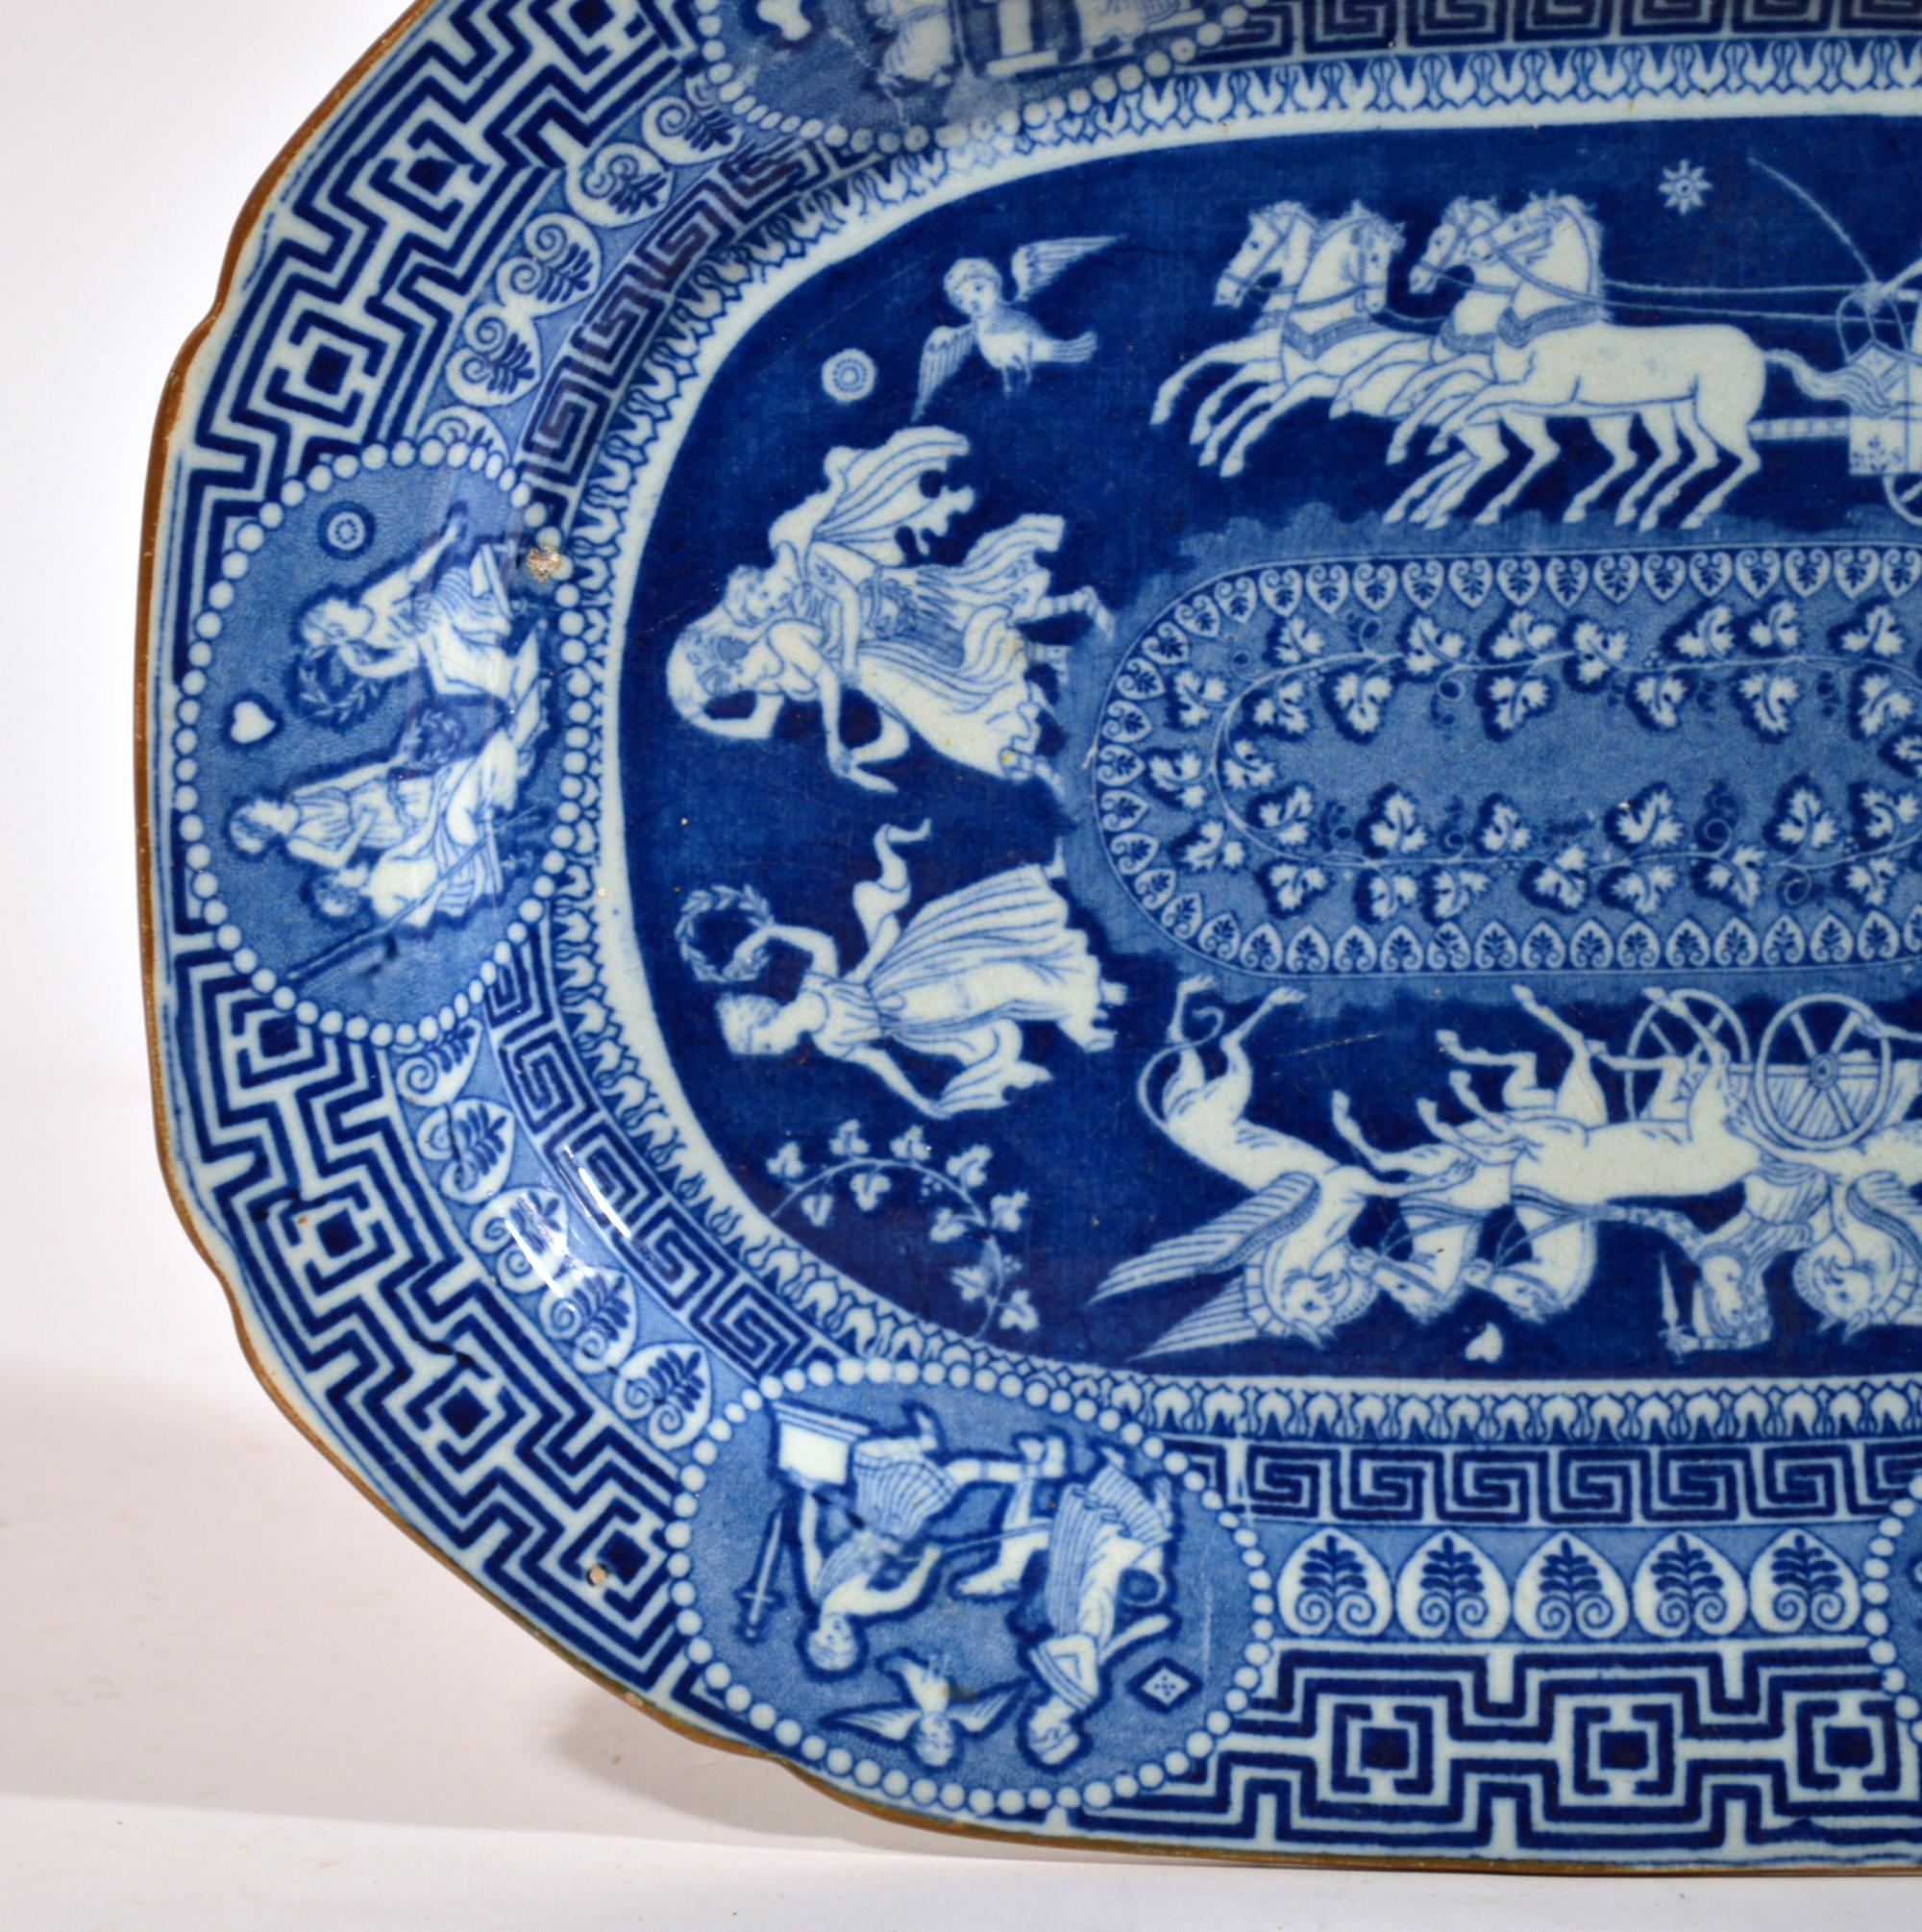 Herculaneum neo-klassischen griechischen Muster blau gedruckt Gericht,
Frühes 19. Jahrhundert

Das zentrale Muster der unterglasurblauen Keramik aus Herculaneum zeigt eine Reihe von Bildern, die eine ovale Tafel mit einer Blattranke umschließen.